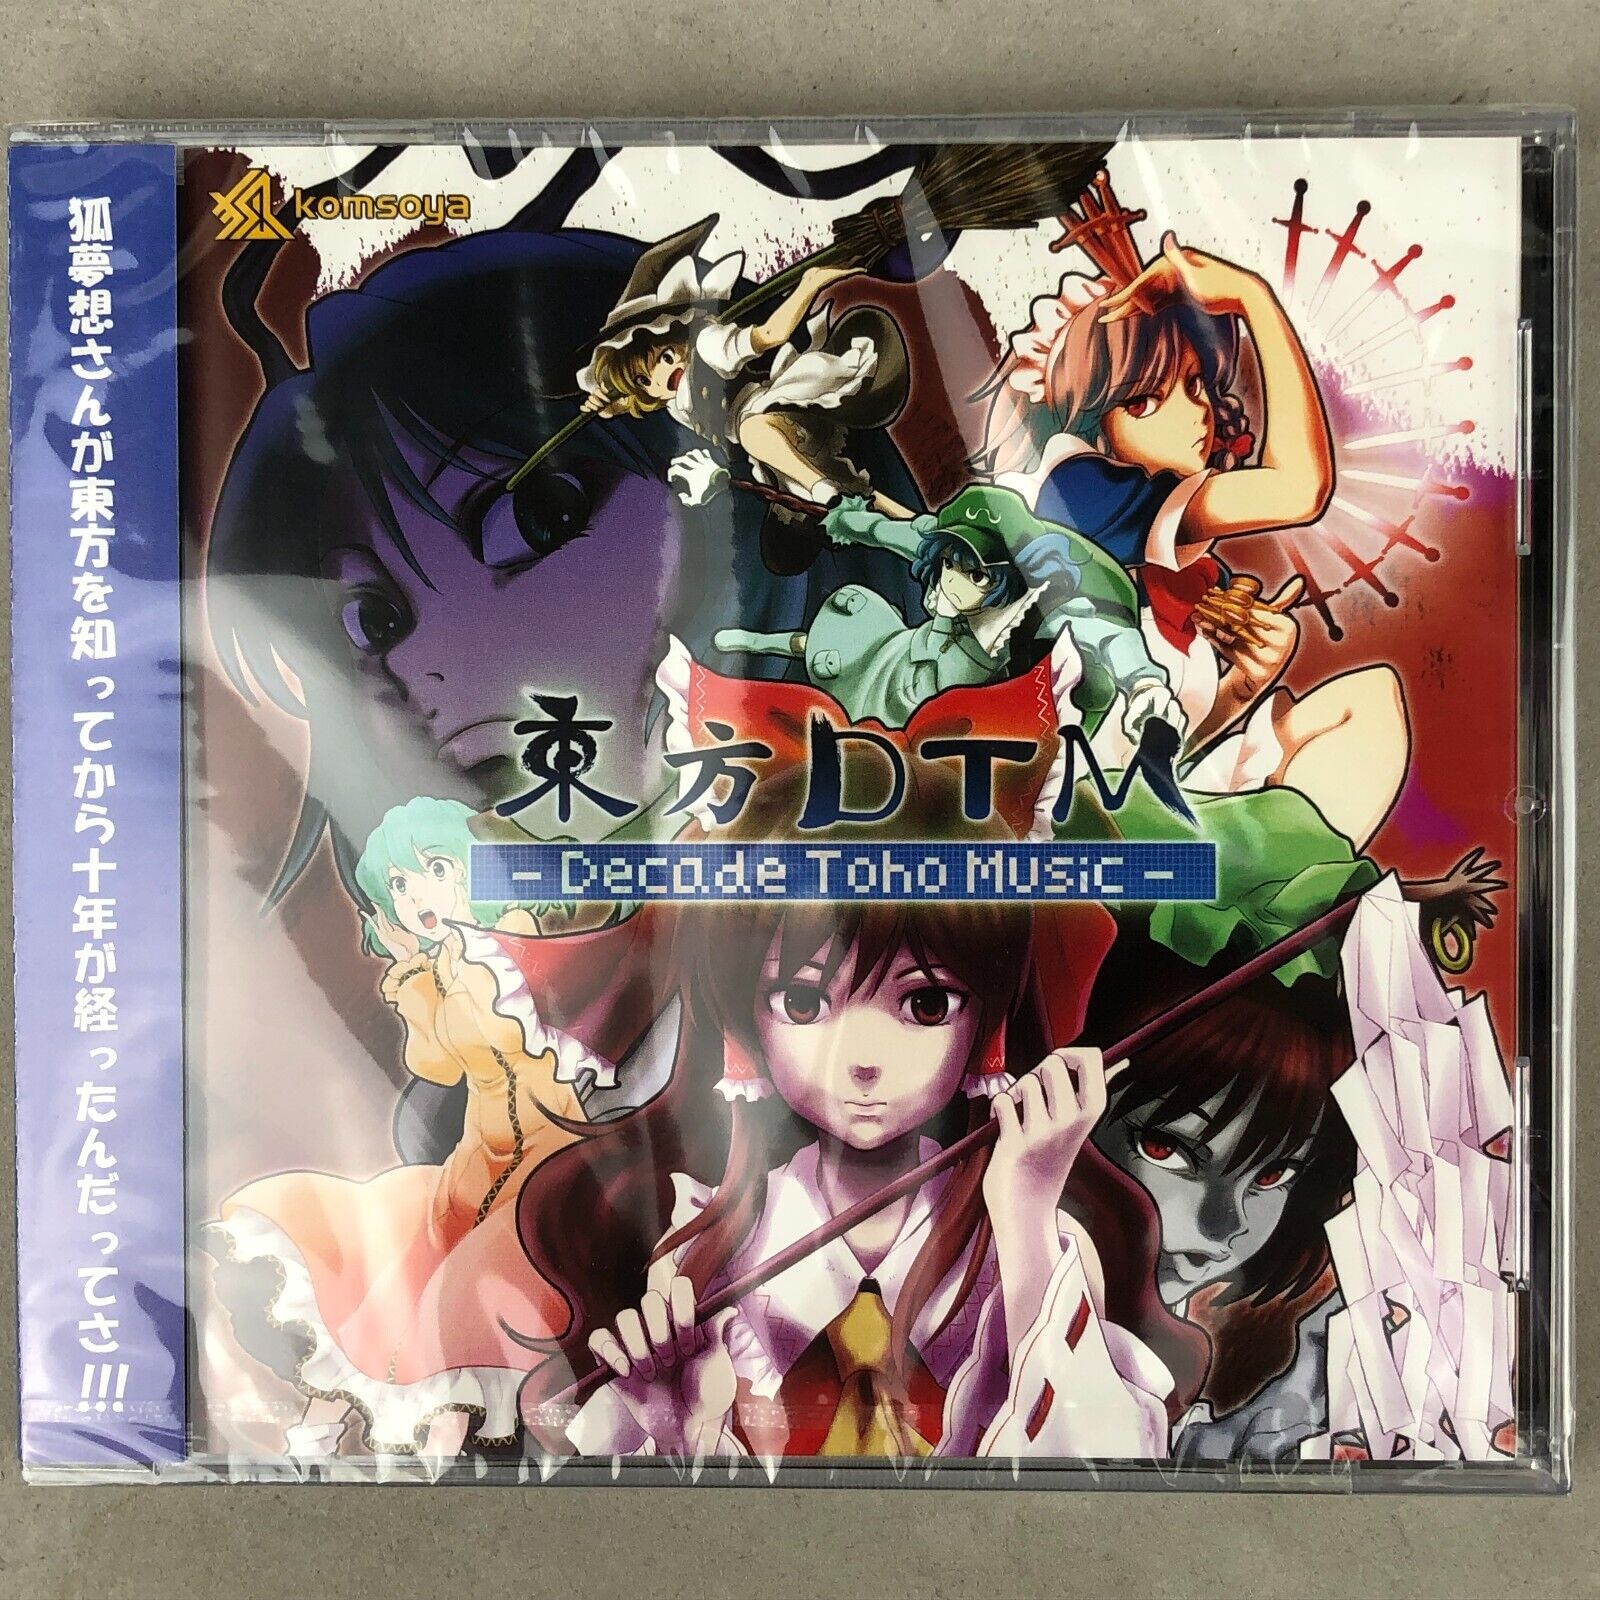 NEW Touhou Project Komsoya DTM Decade Toho Music Doujin Soundtrack Anime CD